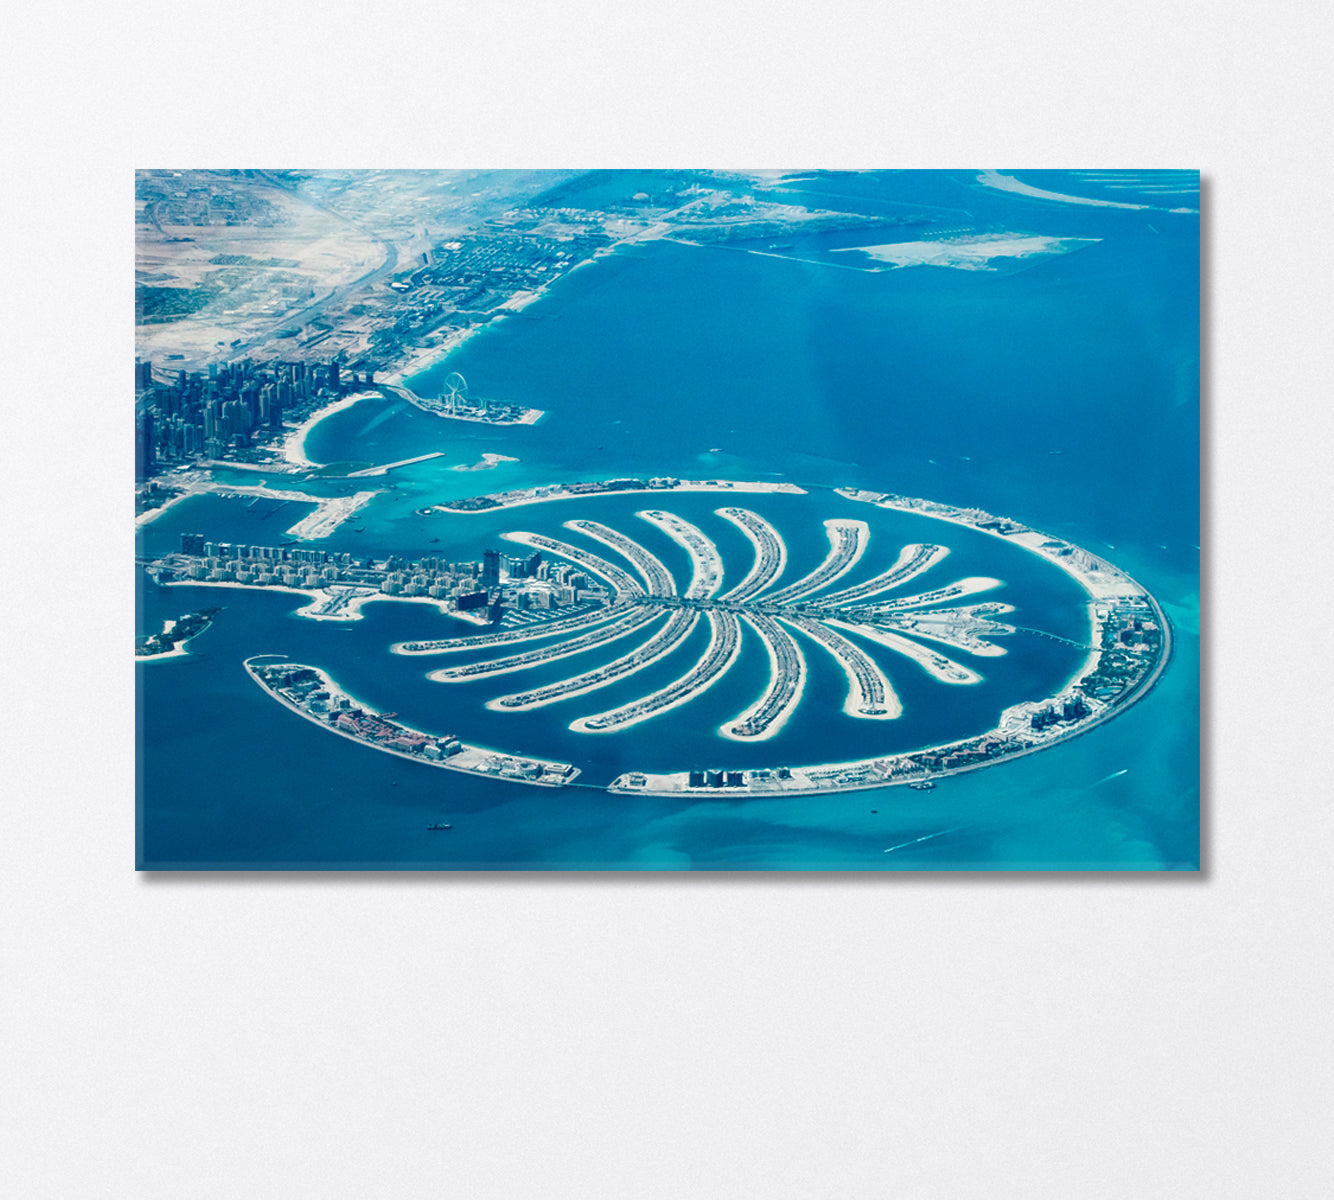 Palm Jumeirah Dubai from the Air Canvas Print-Canvas Print-CetArt-1 Panel-24x16 inches-CetArt